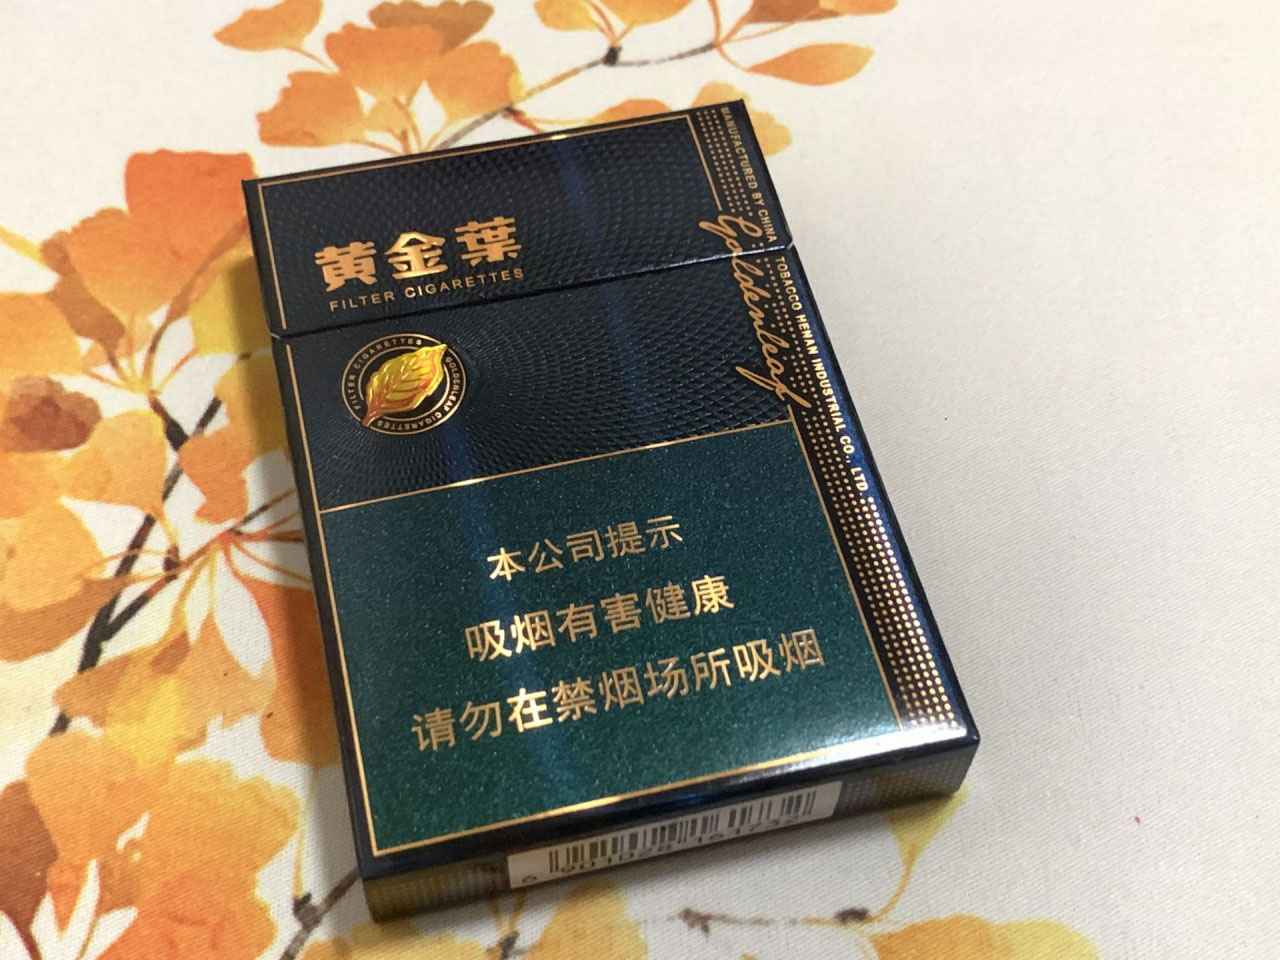 【图】黄金叶(蓝调翡冷翠)香烟